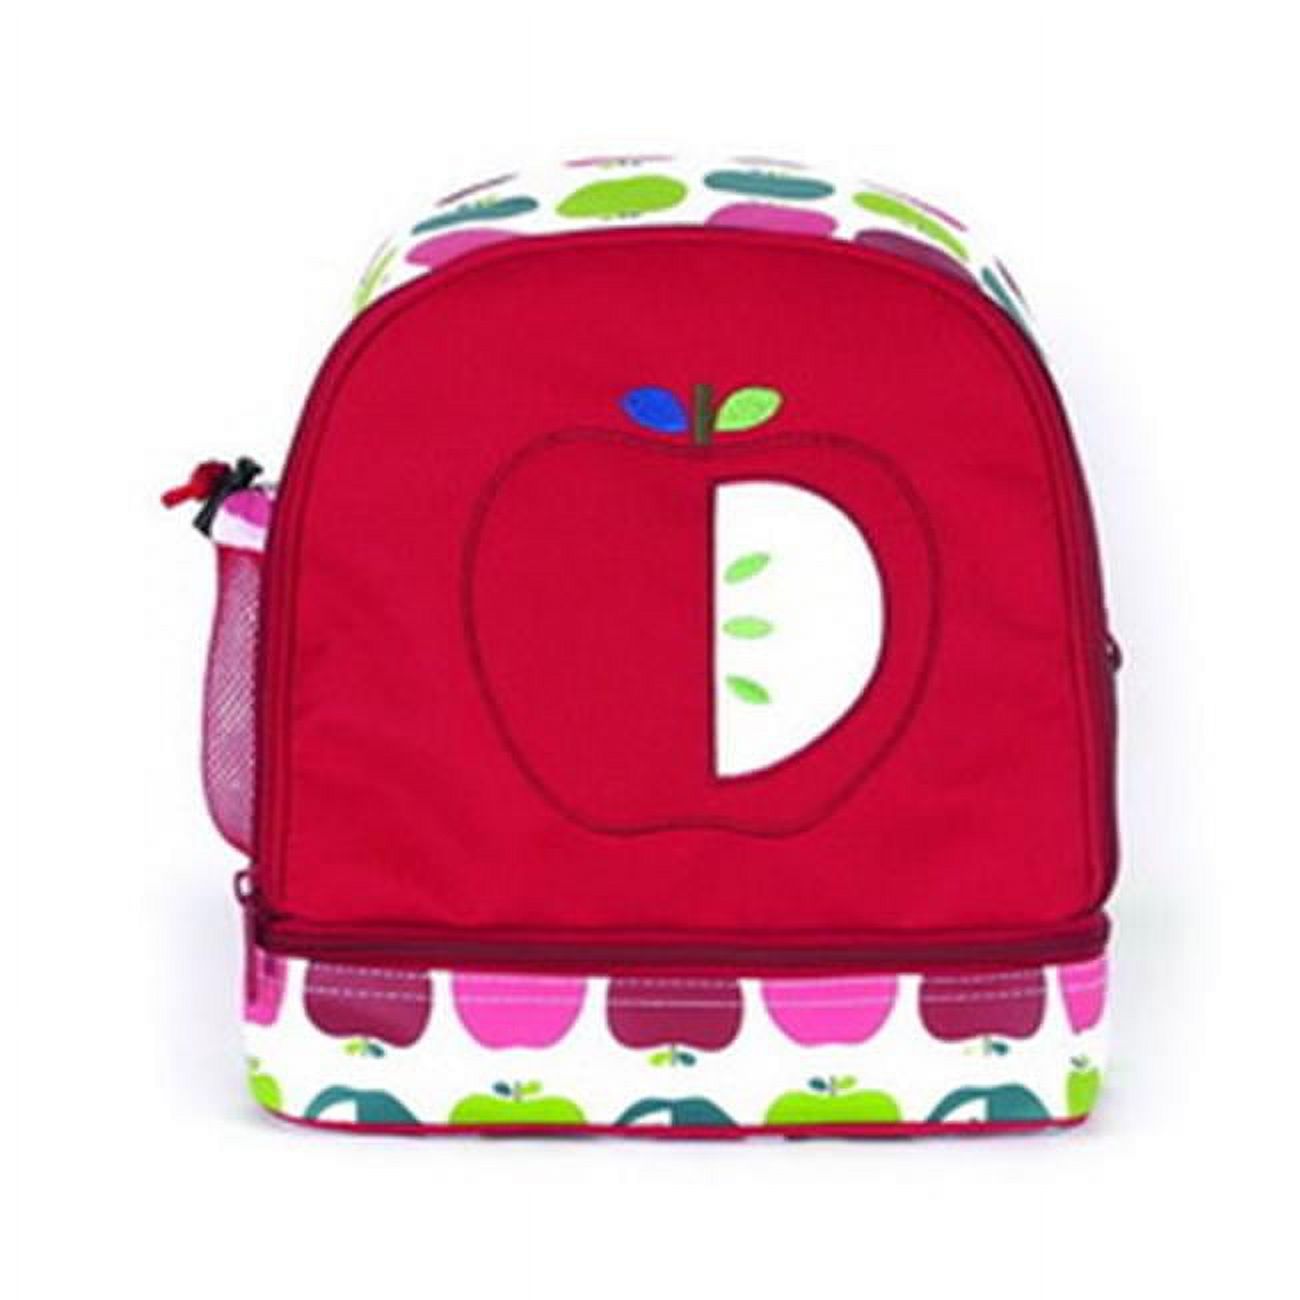 Junior Backpack - Juicy Apple - image 1 of 1